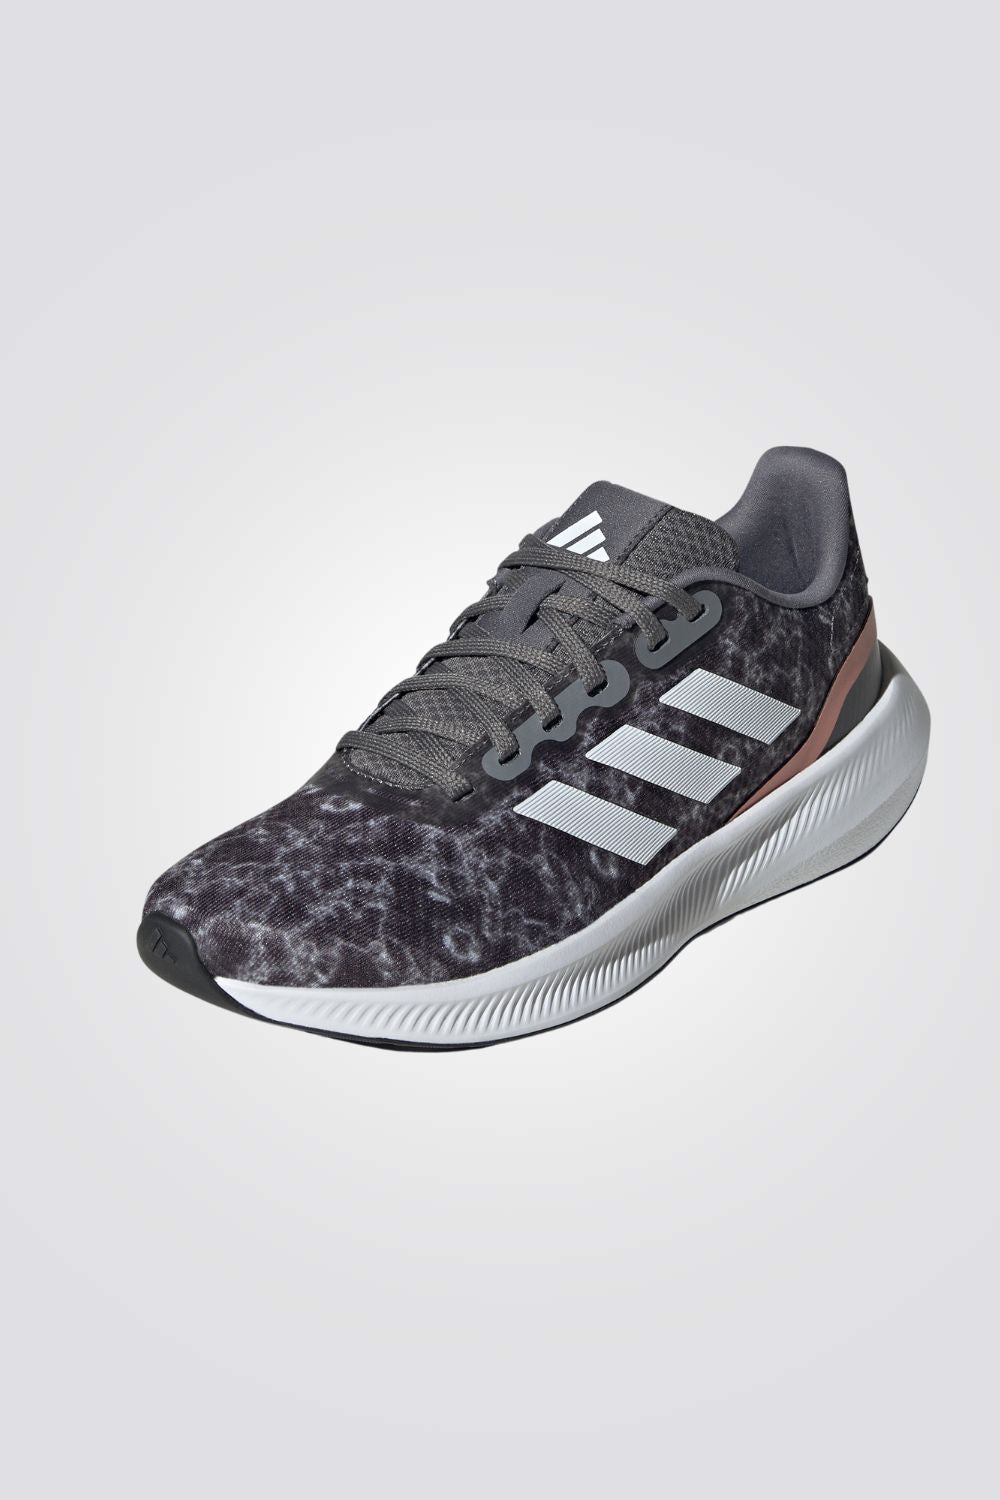 ADIDAS - נעלי ספורט לנשים RUNFALCON 3.0 בצבע פחם ולבן - MASHBIR//365